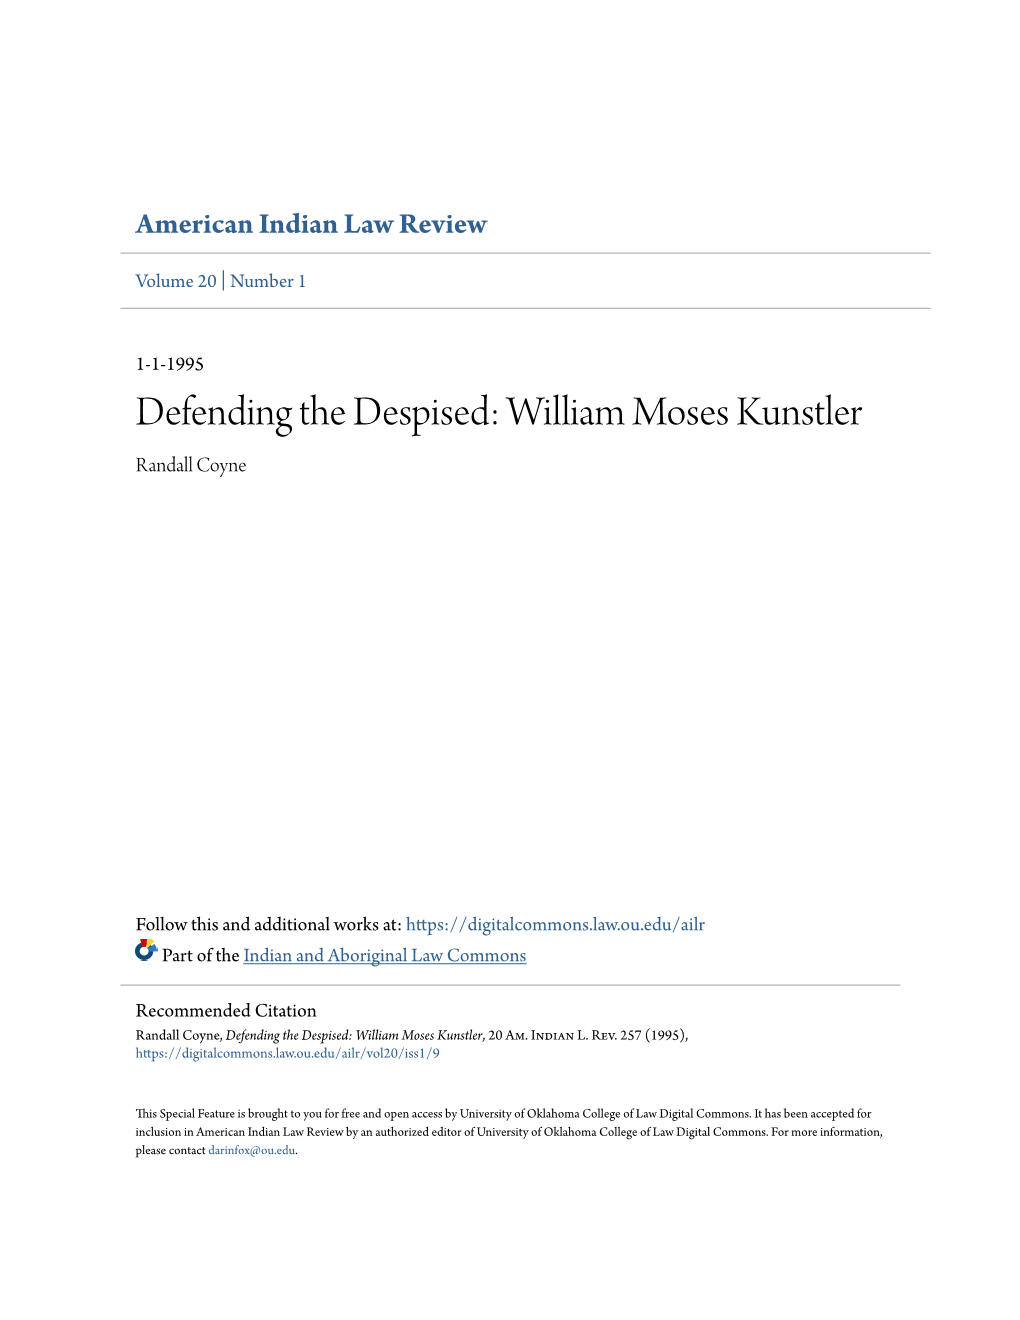 Defending the Despised: William Moses Kunstler Randall Coyne